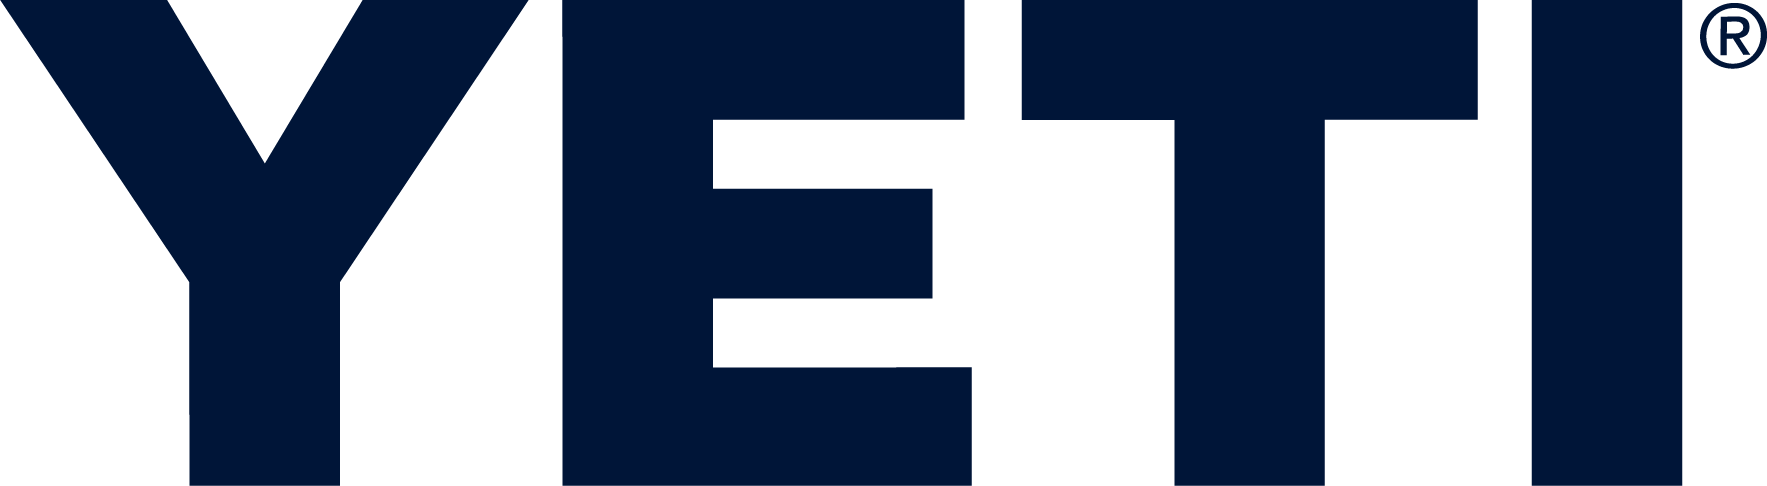 예티 (Yeti) Logo